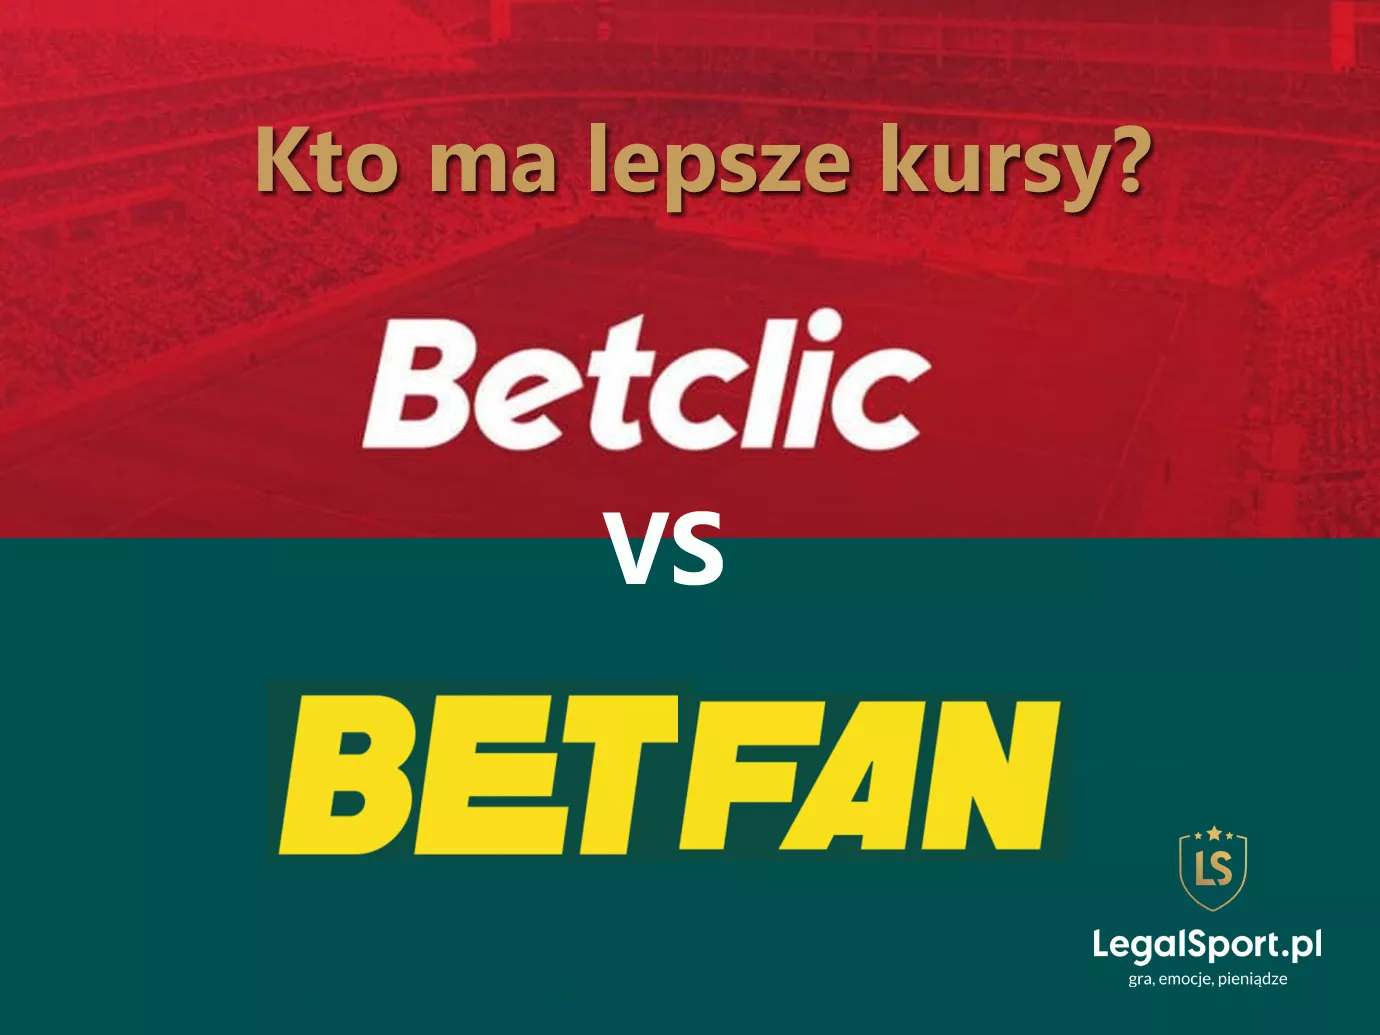 Kto ma lepsze kursy: Betclic czy BETFAN?